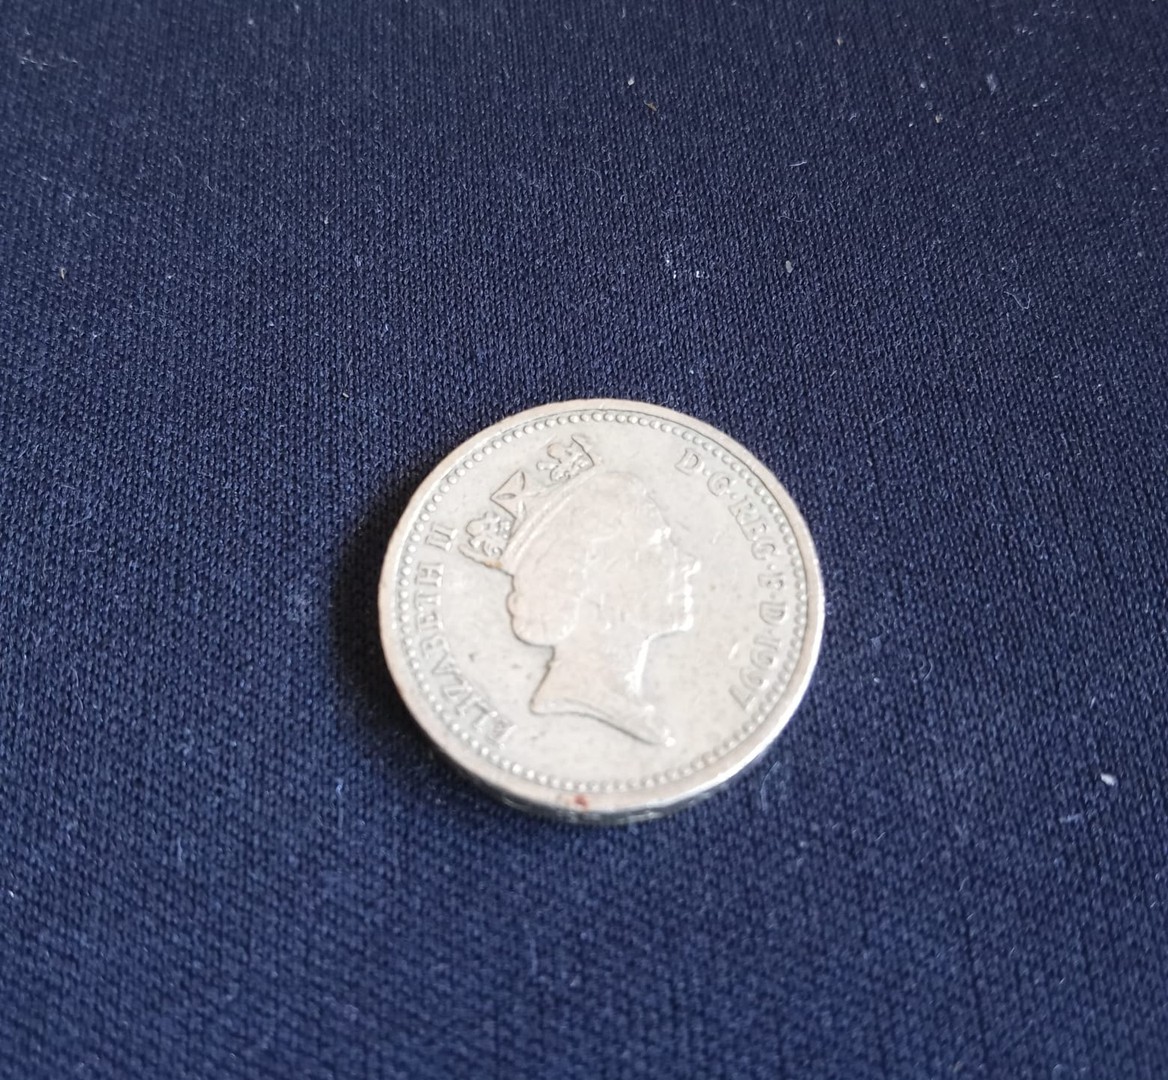 arte y antigüedades - Moneda rara de 1 libra Queen Elizabeth II, DECUS ET TUTAMEN 1997.  One Pound.  0